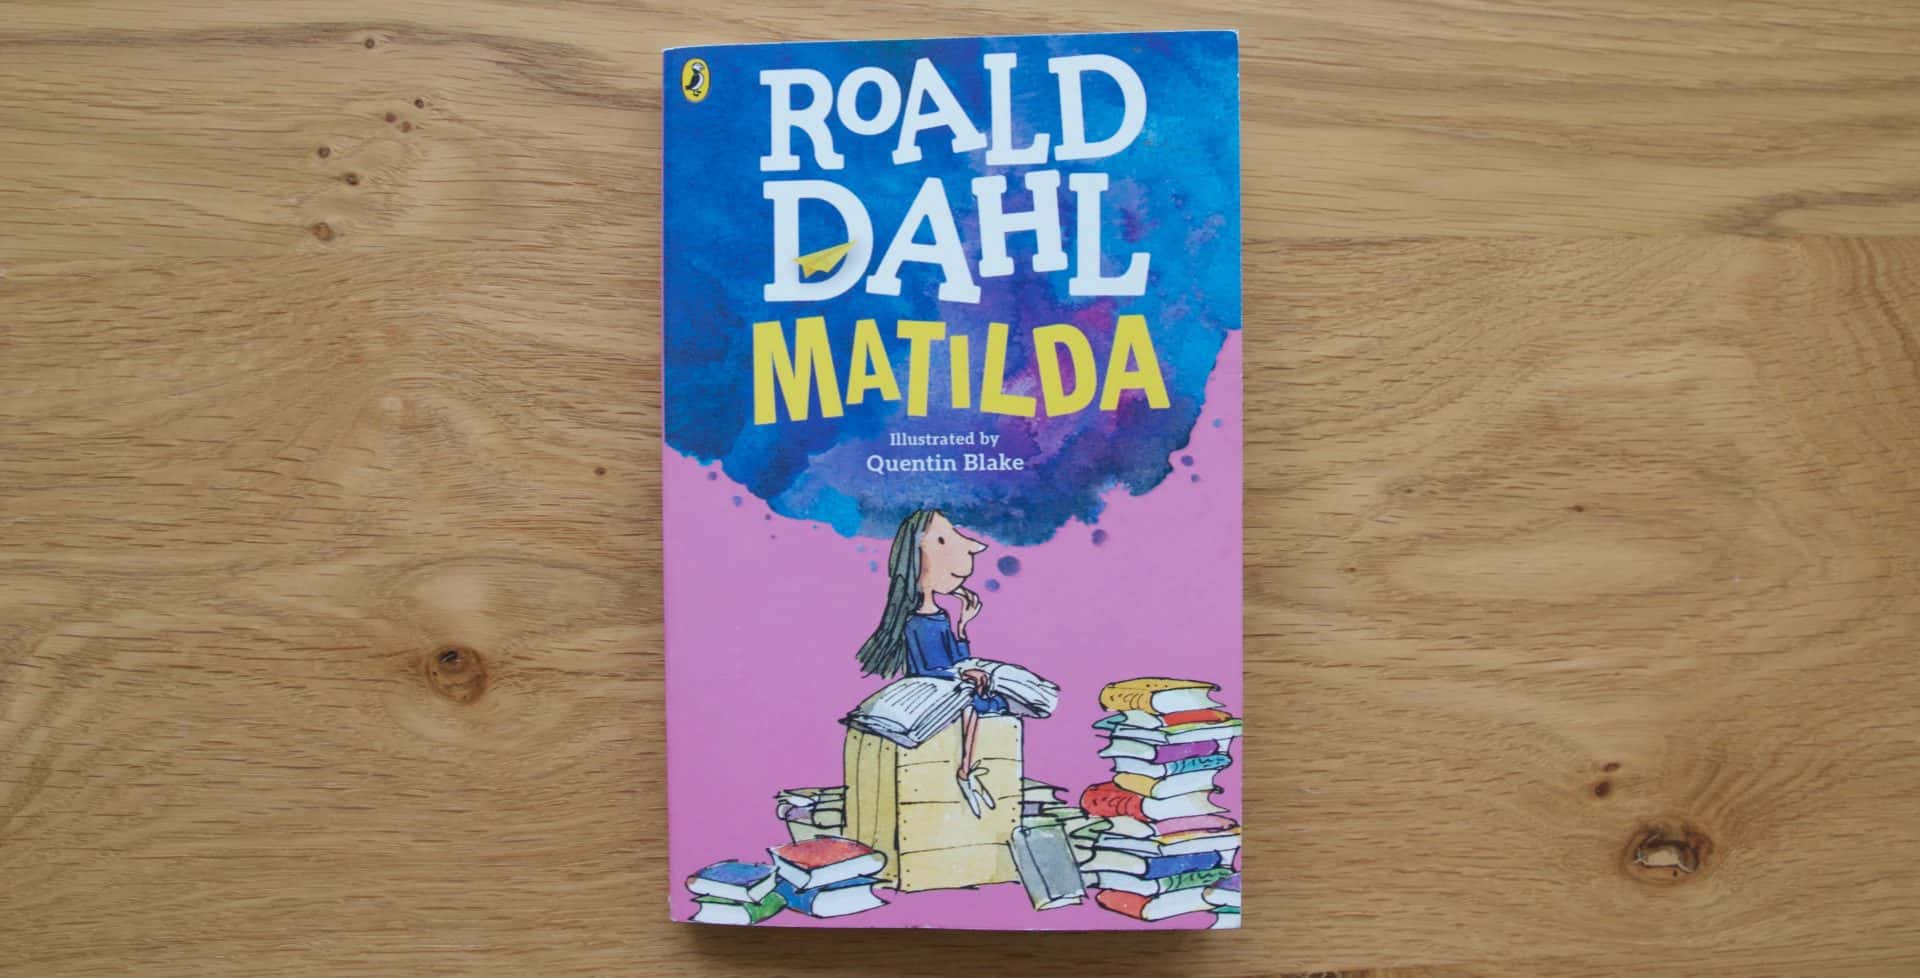 42 Precocious Facts About Roald Dahls Matilda